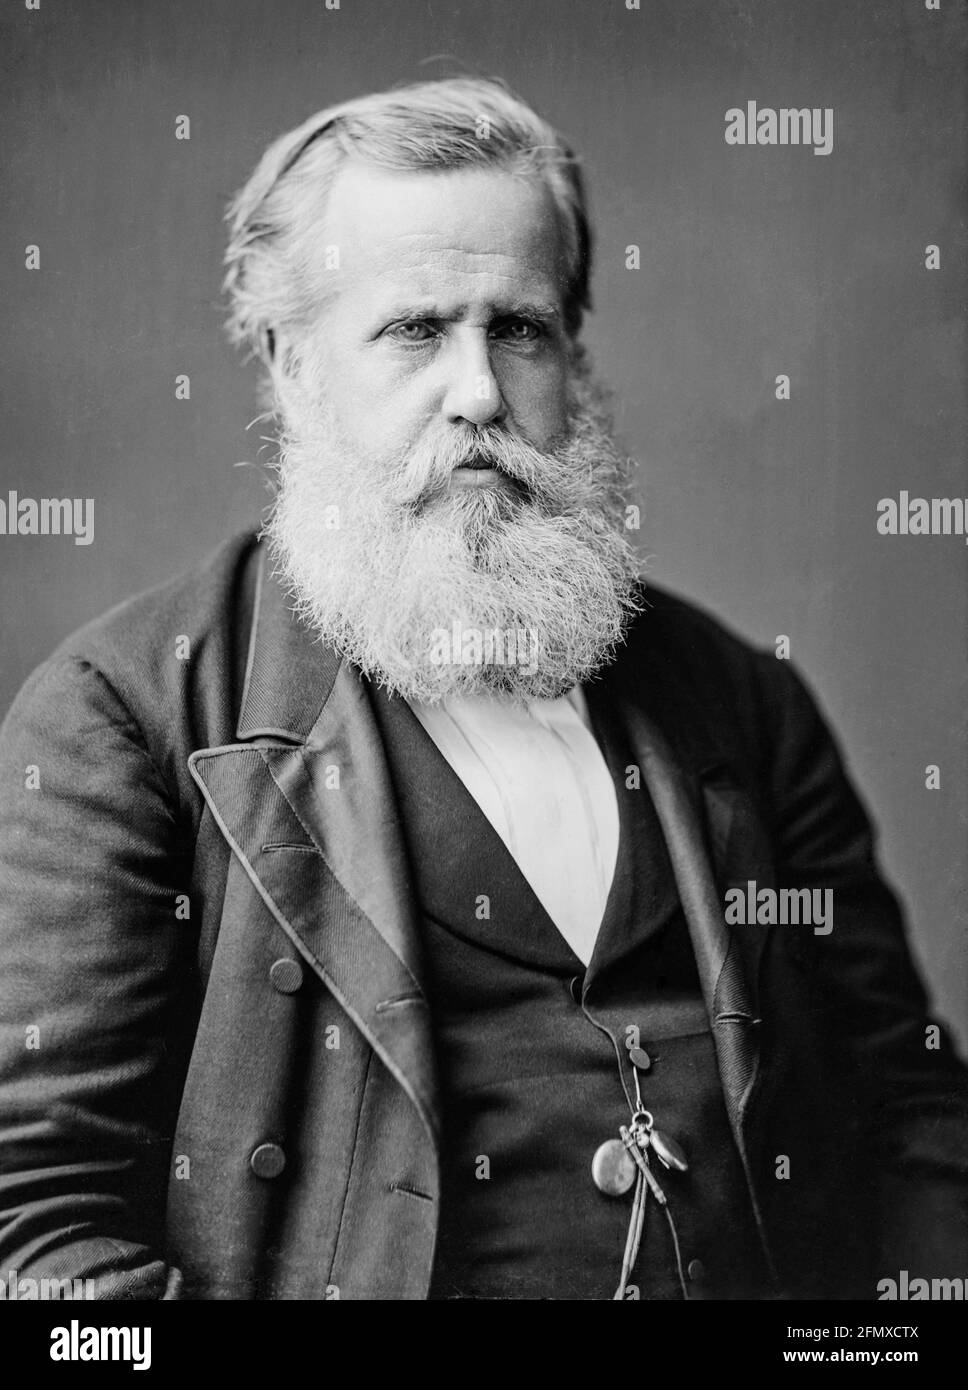 Dom Pedro II (1825-1891), est le deuxième et dernier empereur de l'Empire du Brésil, photographie de portrait par Brady-Handy Photography, 1876 Banque D'Images